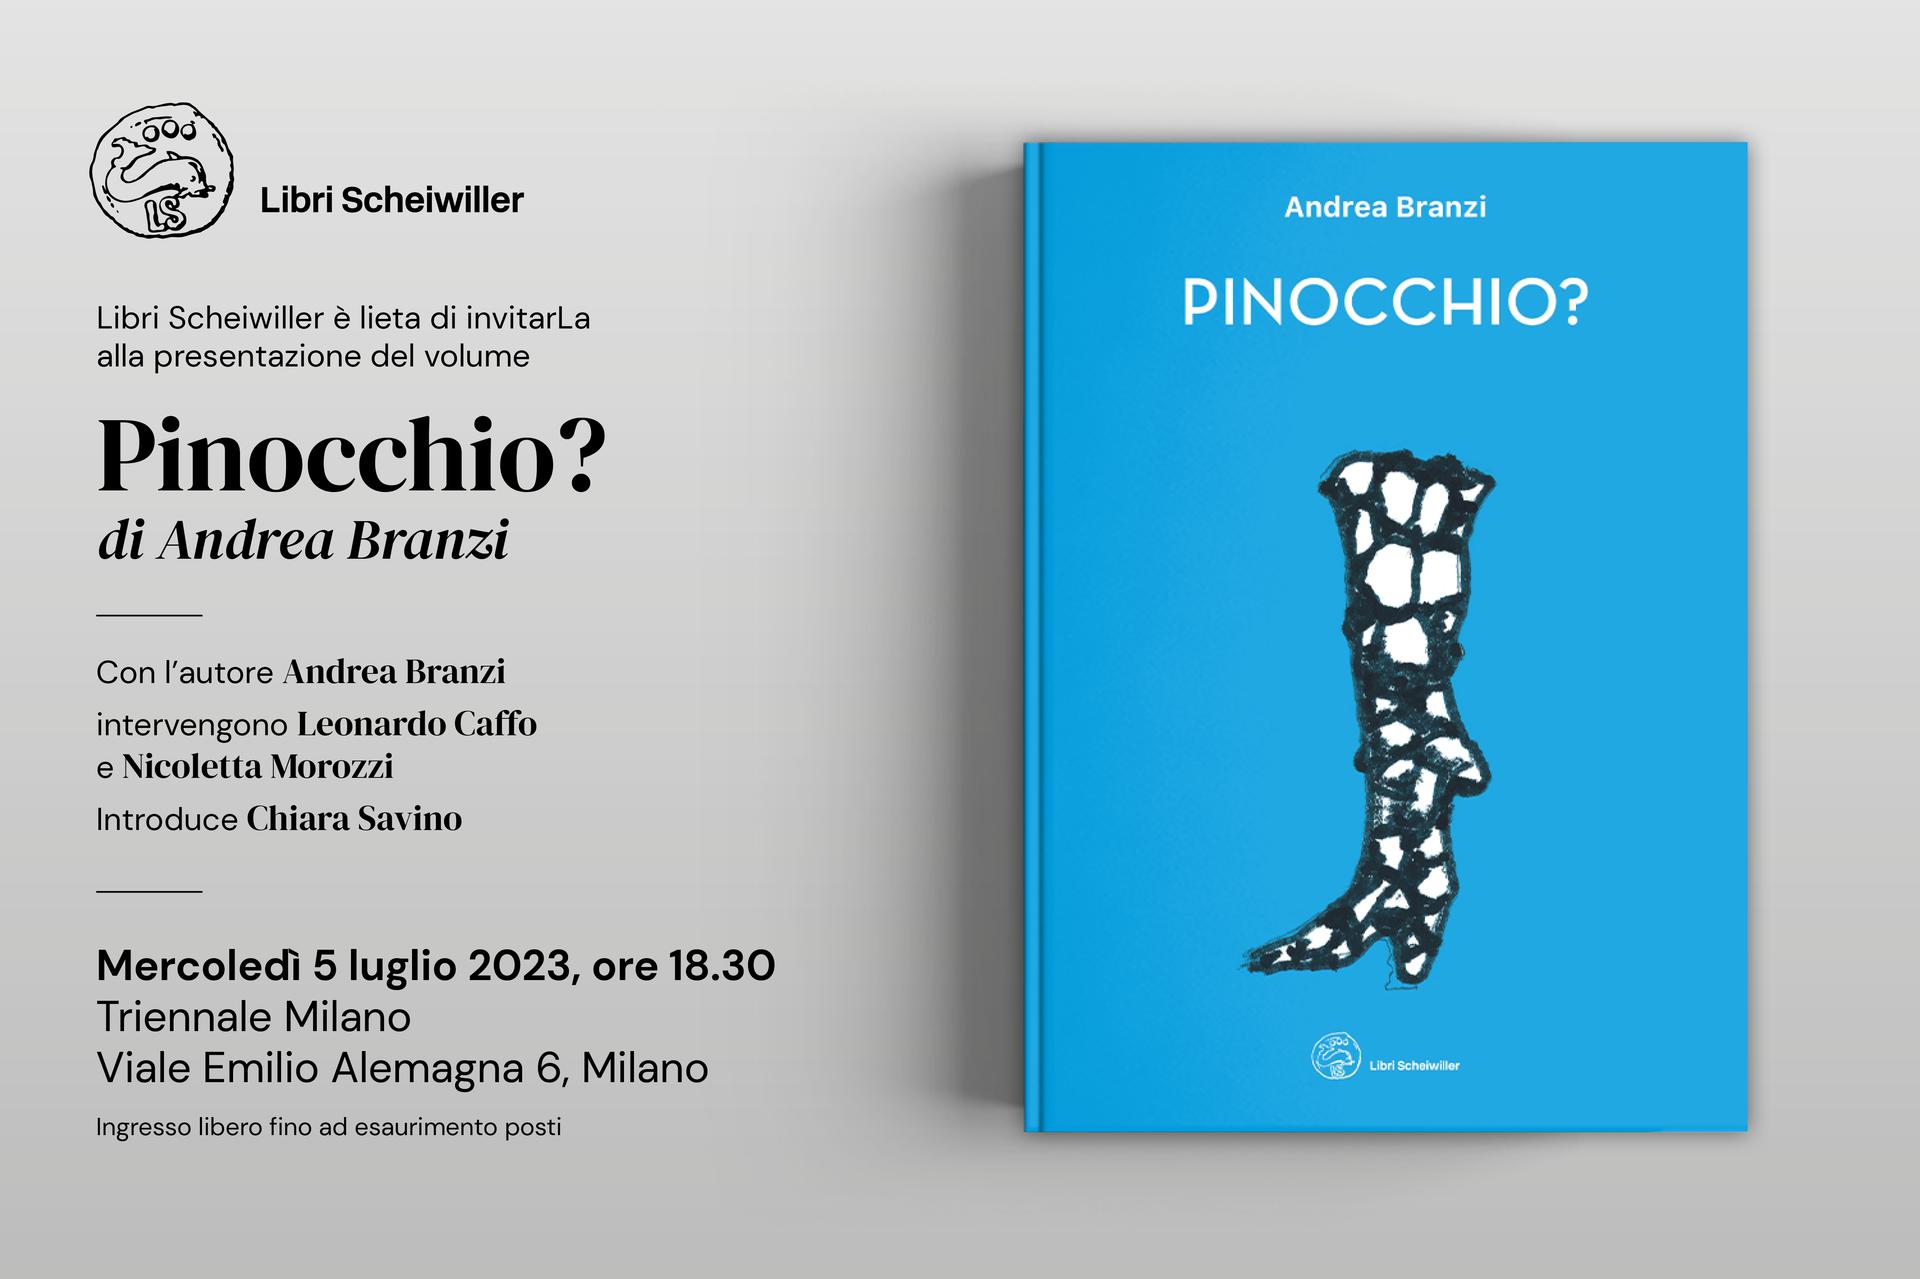 Mercoledì 5 luglio ore 18.30 | Triennale Milano | Presentazione del volume “Pinocchio?” di Andrea Branzi | Edito da Libri Scheiwiller